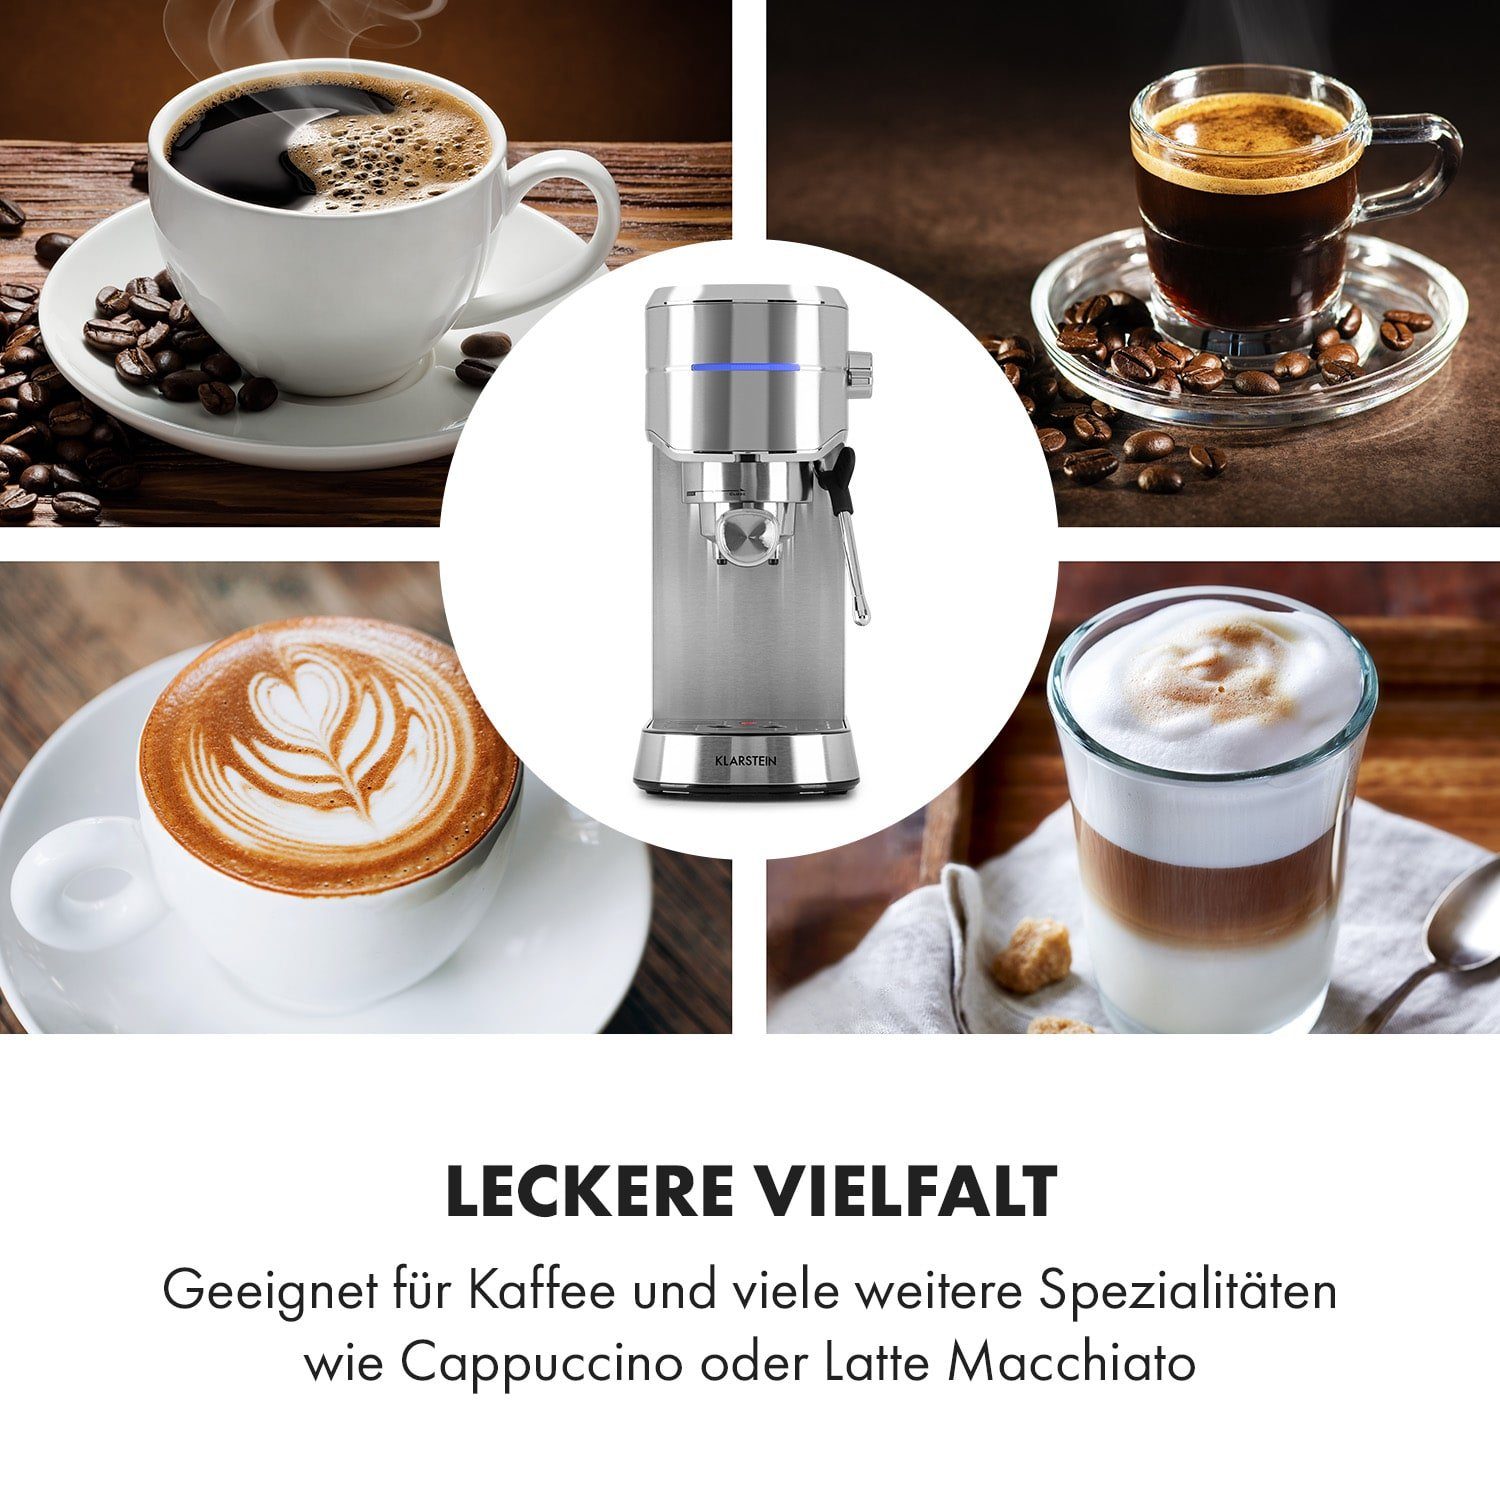 Stoppfunktion Espressomaker, Tasse: für die Futura Klarstein richtige jede Für Filterkaffeemaschine Menge